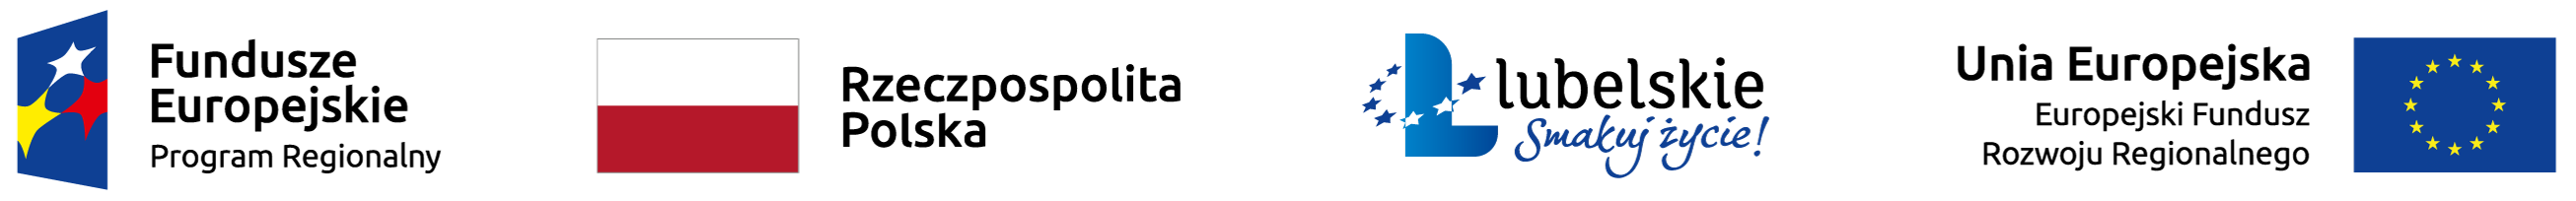 Baner z logotypami projektów dofinansowanych z europejskich funduszy